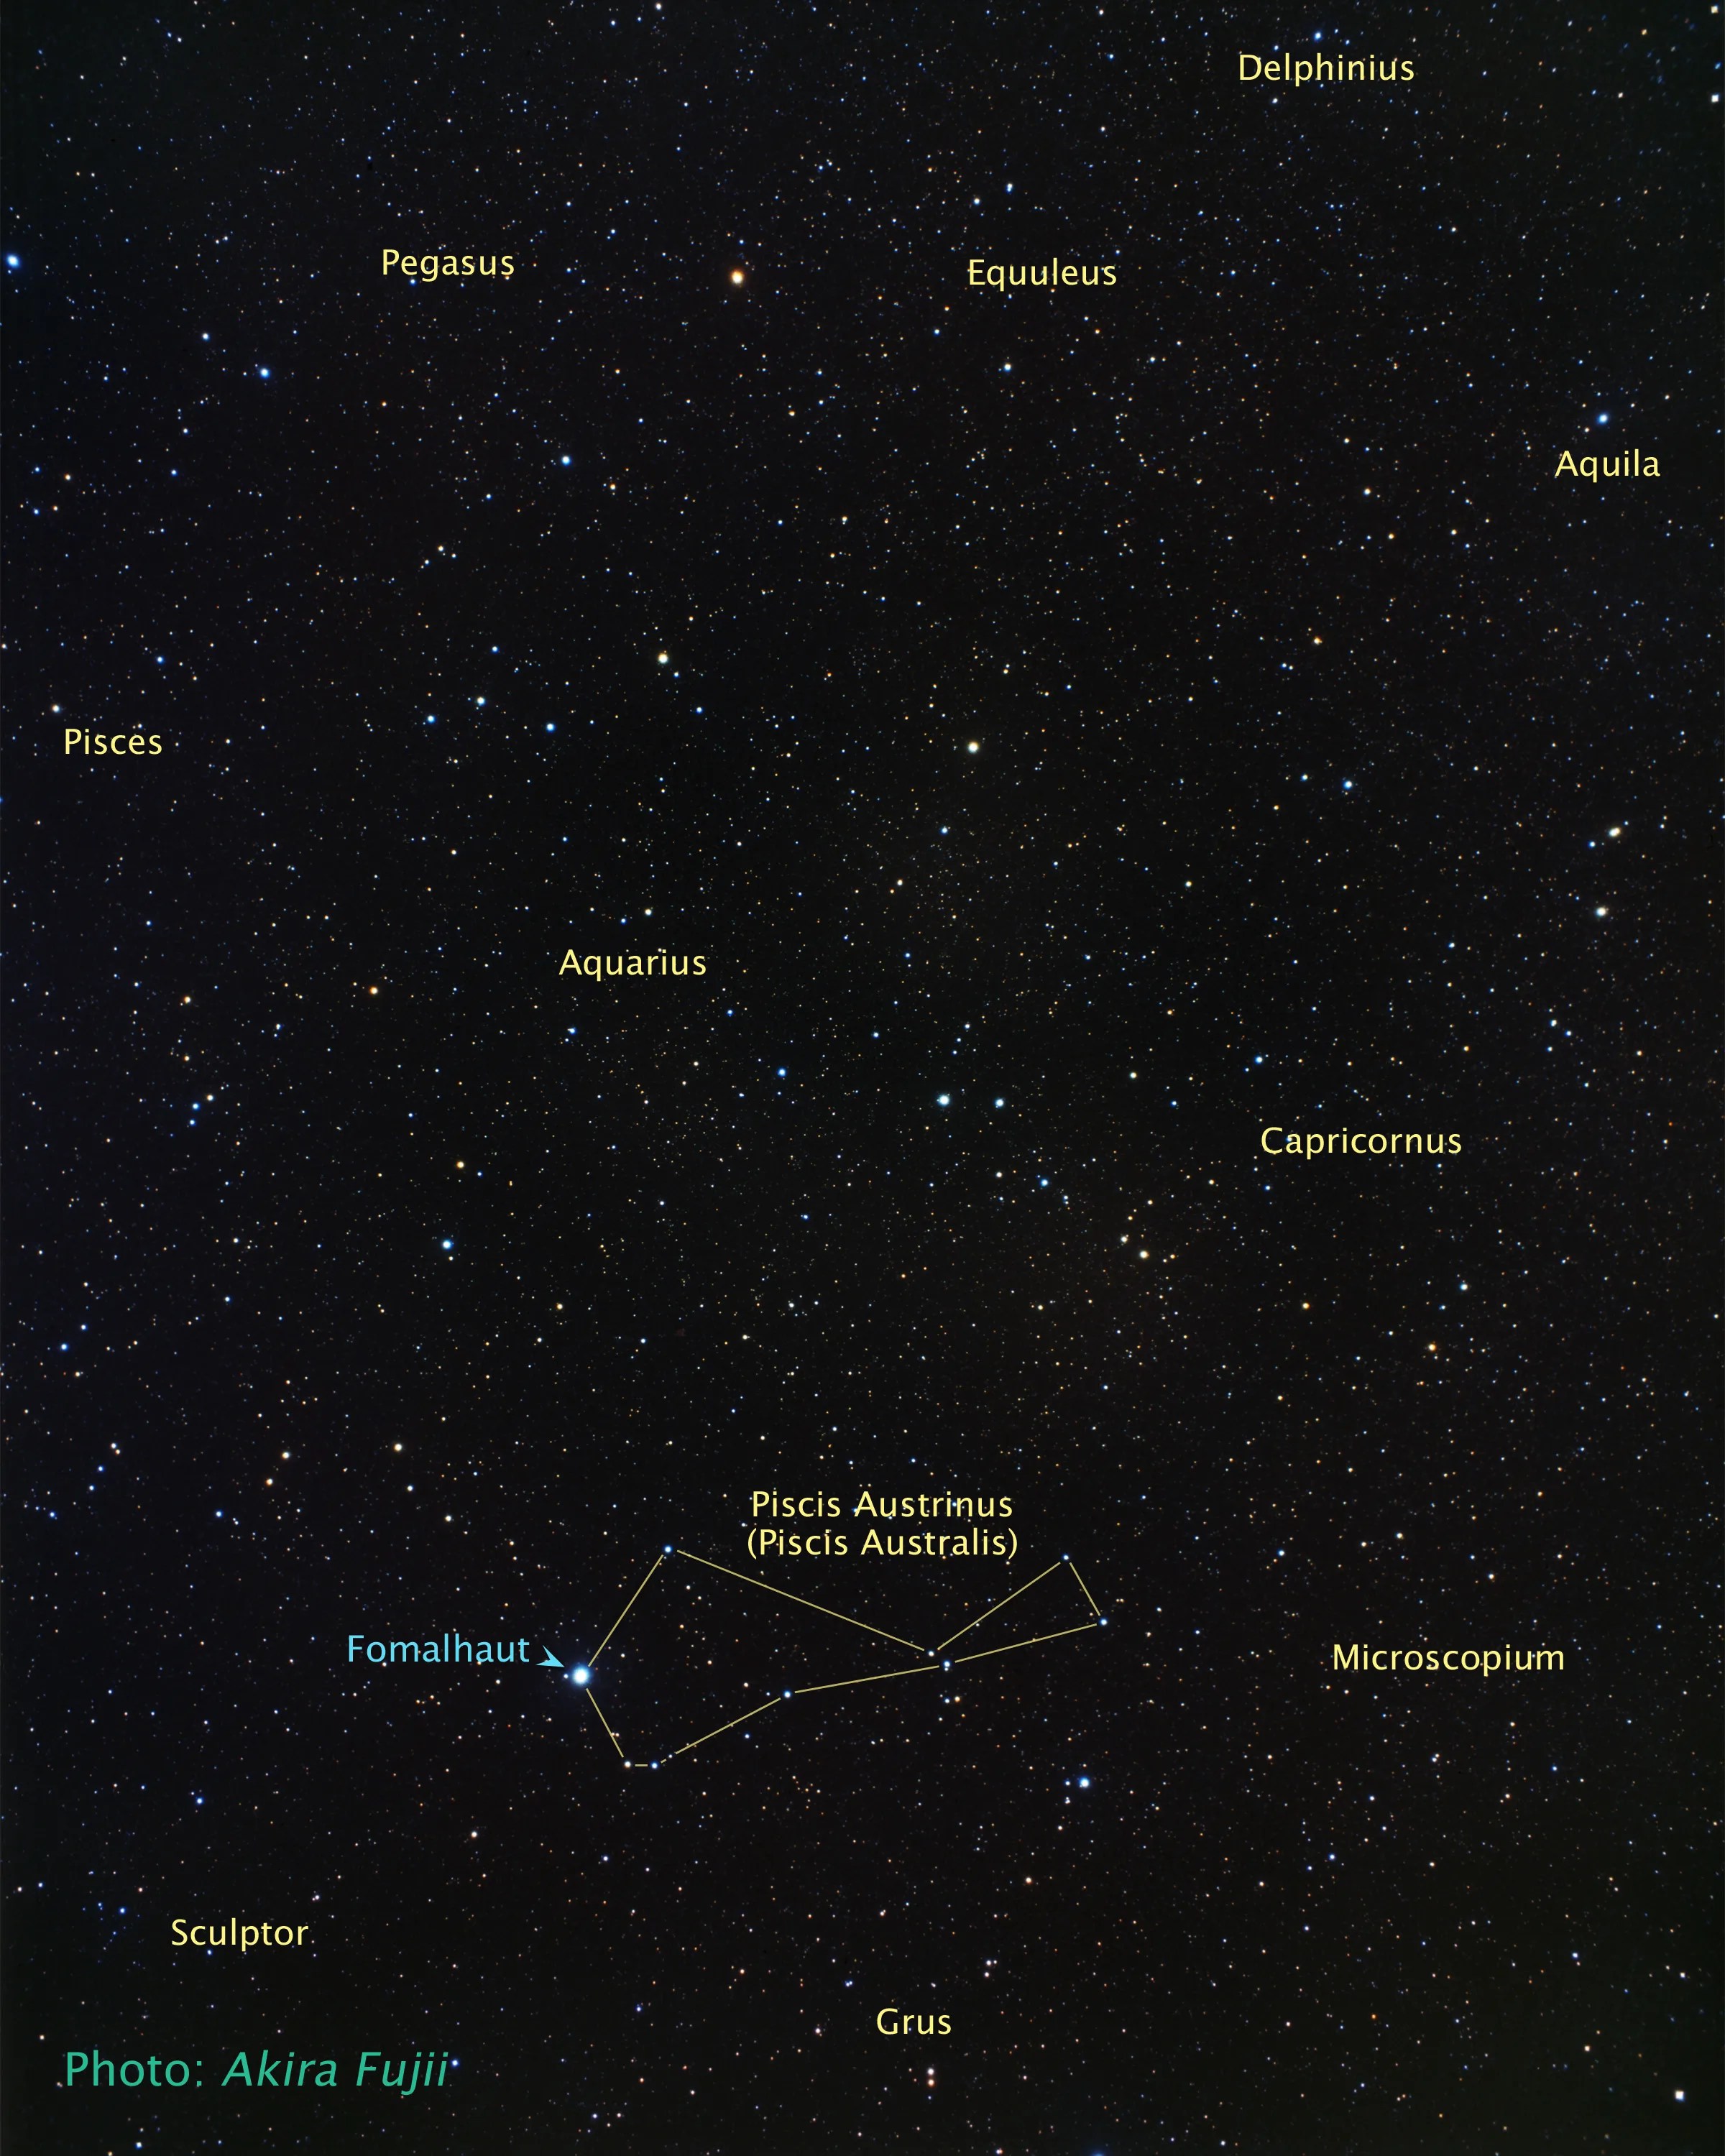 Constellation Picis Australis